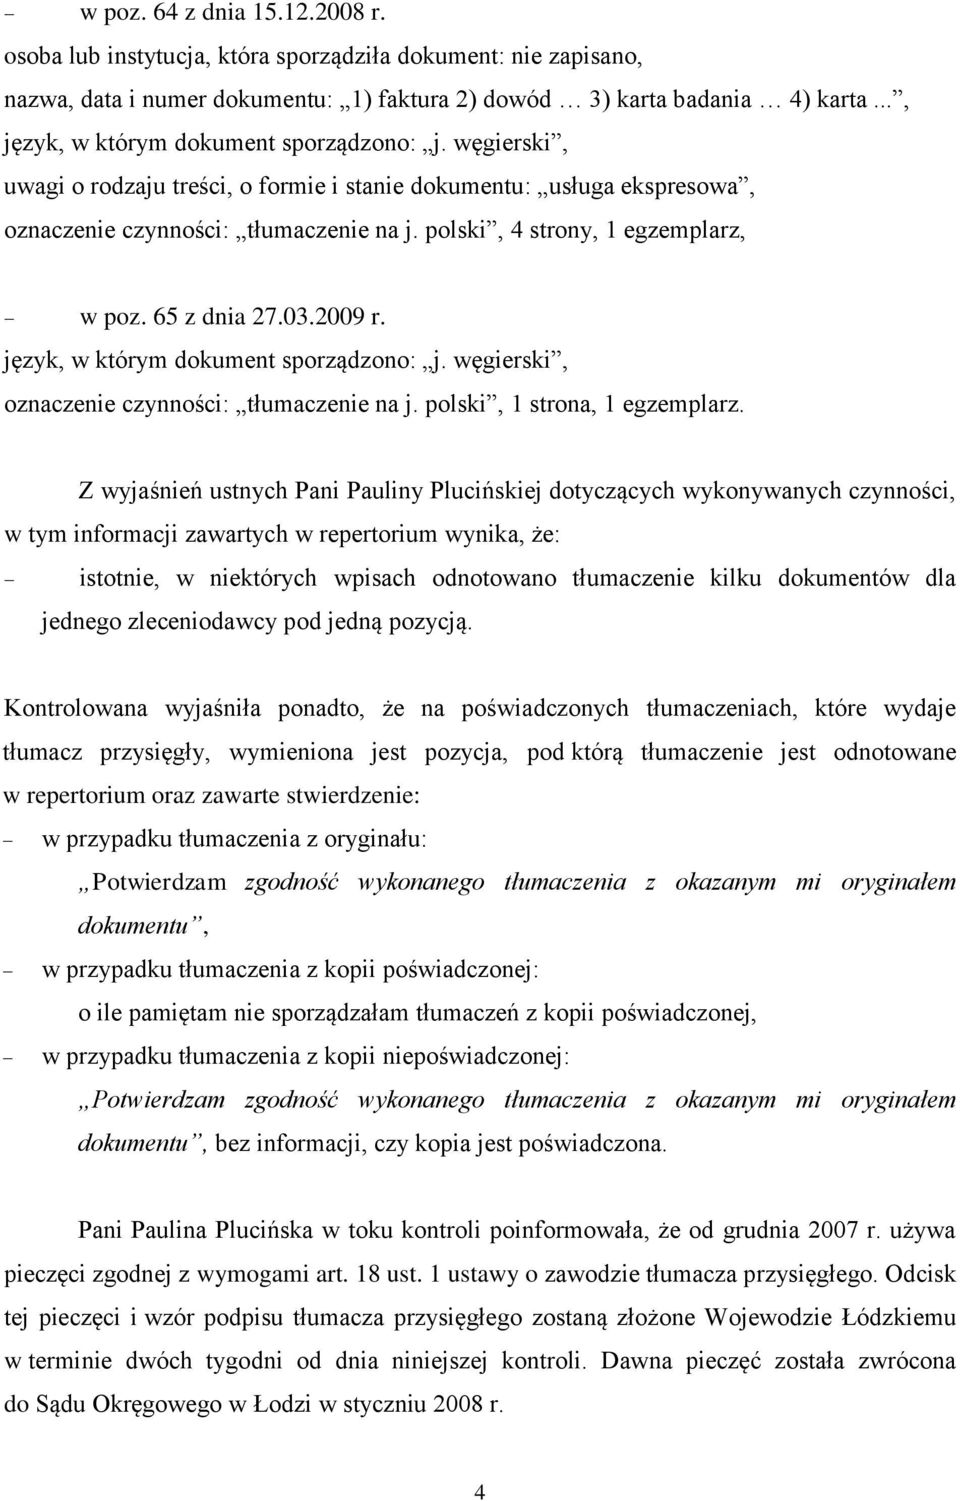 oznaczenie czynności: tłumaczenie na j. polski, 1 strona, 1 egzemplarz.